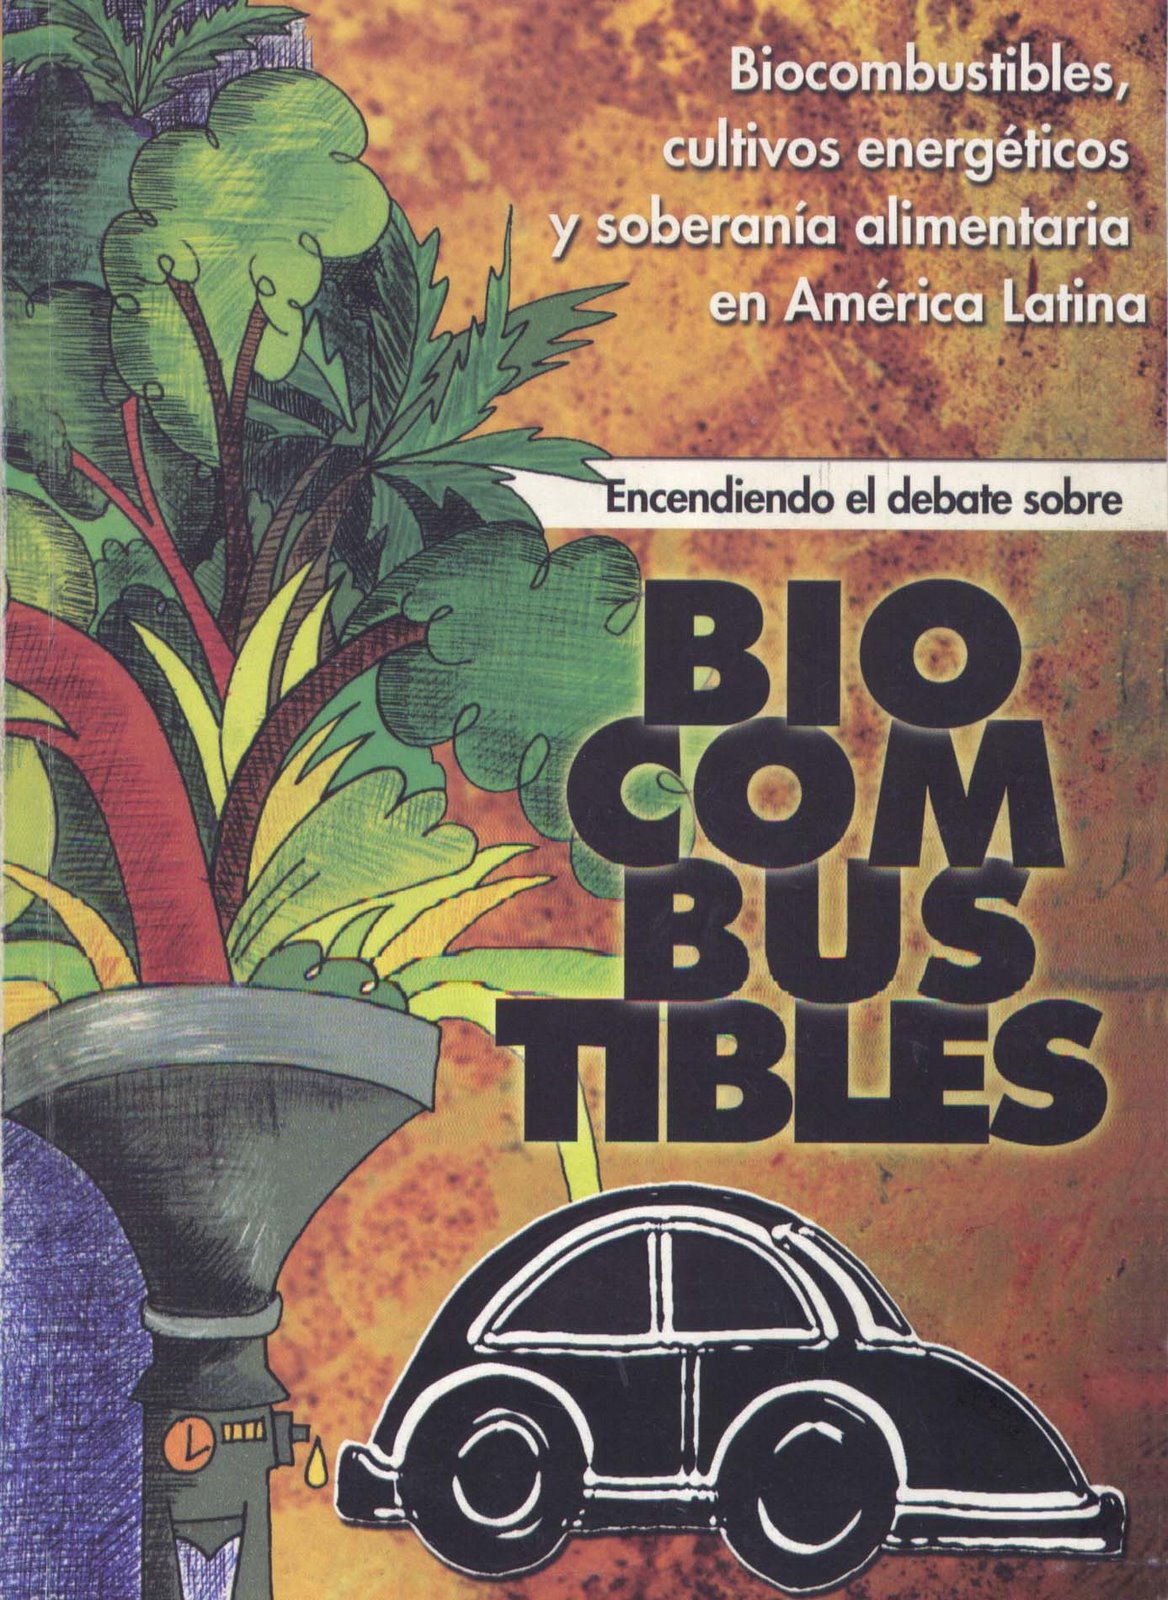 [biocombustibles.jpg]